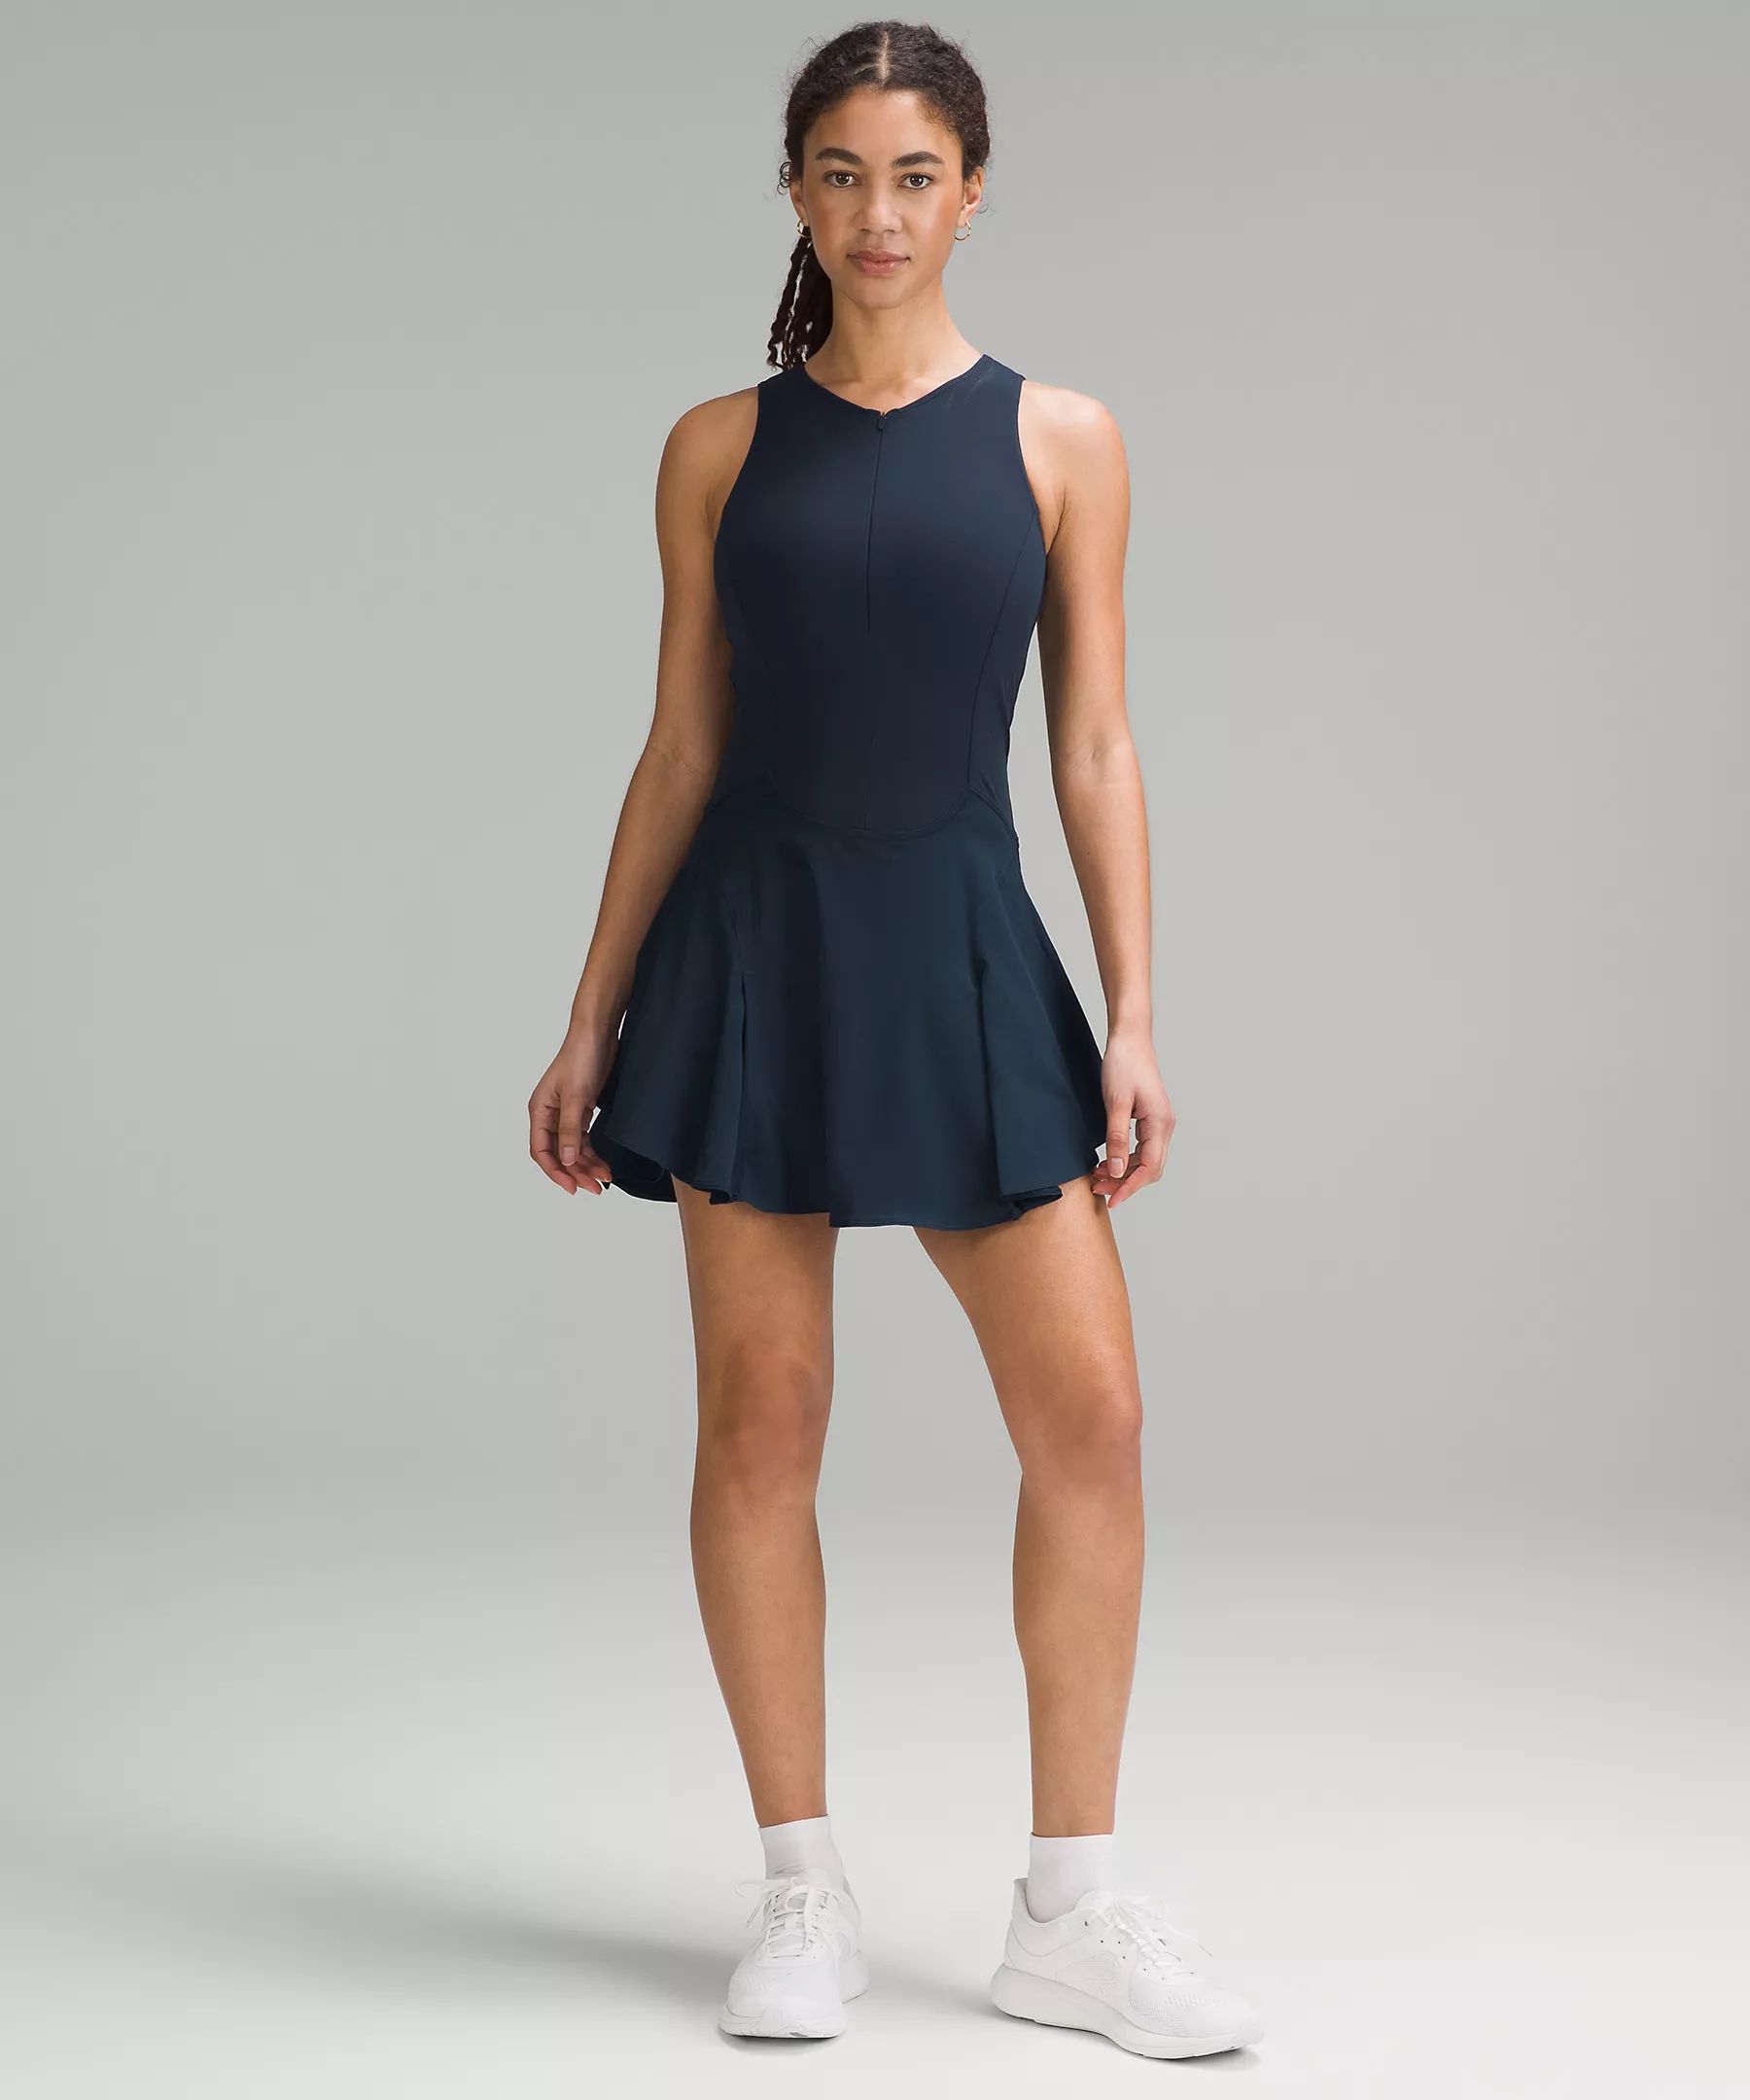 Everlux Short-Lined Tennis Tank Top Dress 6" | Lululemon (US)